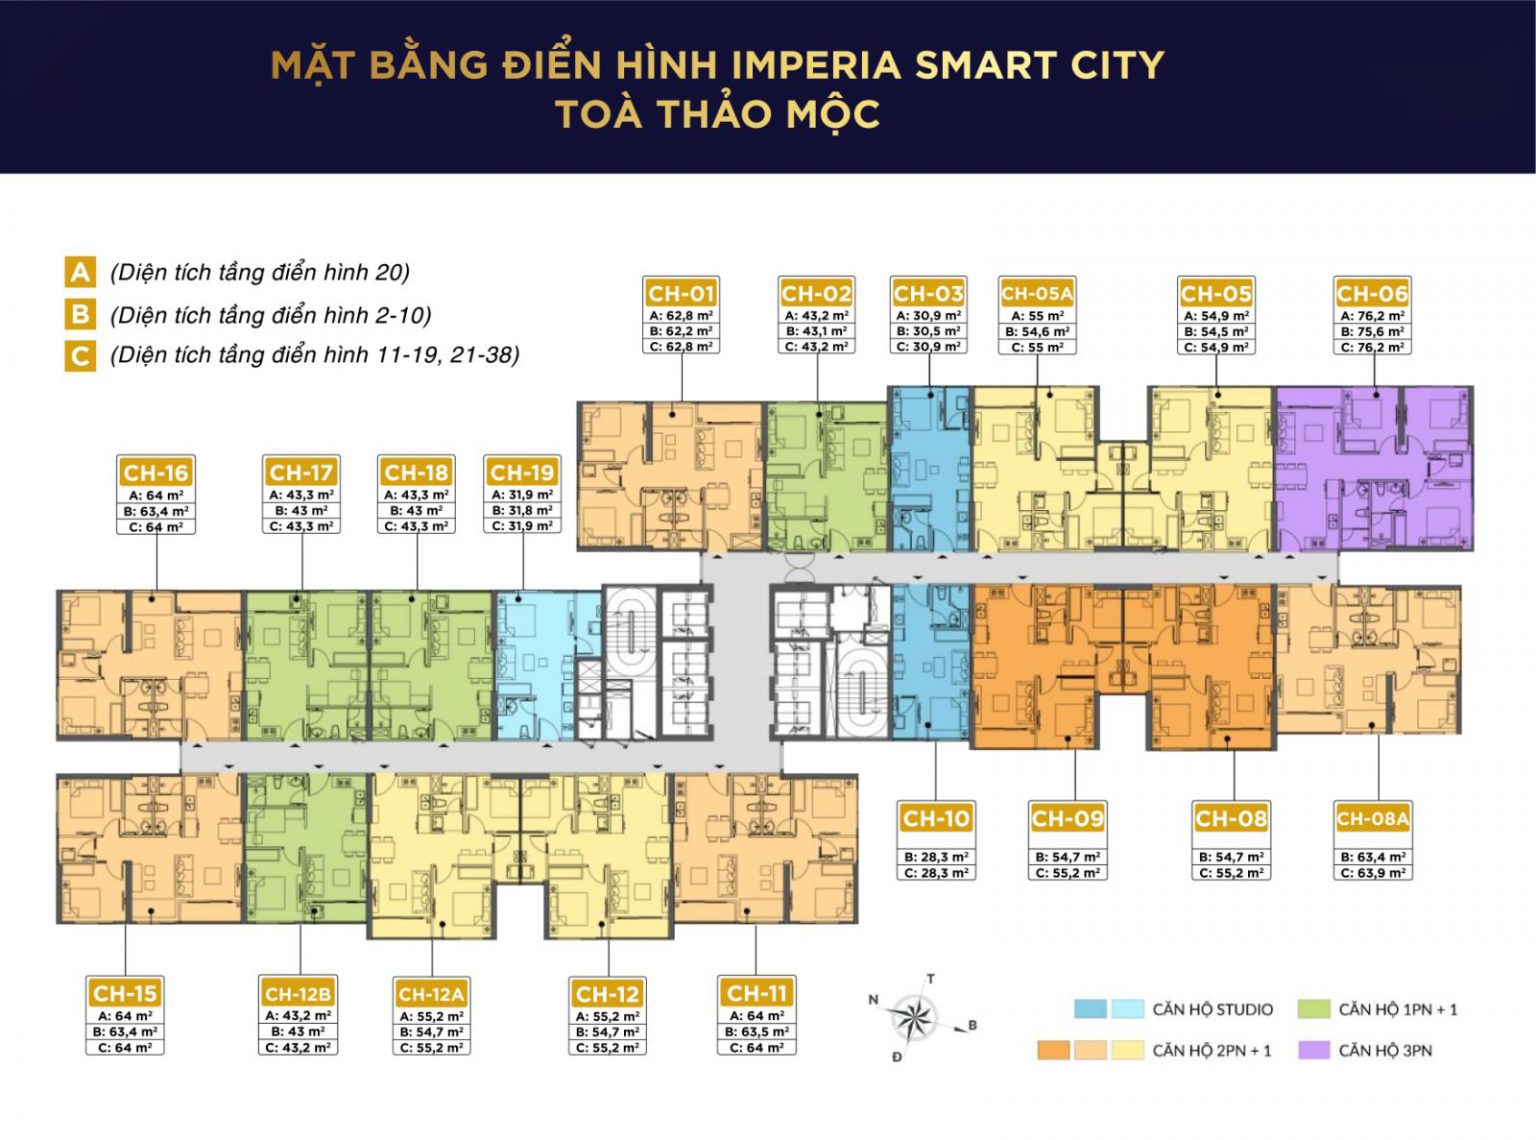 [HOT!!] Bán căn hộ 3PN diện tích 75,6m2 tòa l5 - Thảo Mộc Imperia Smart City